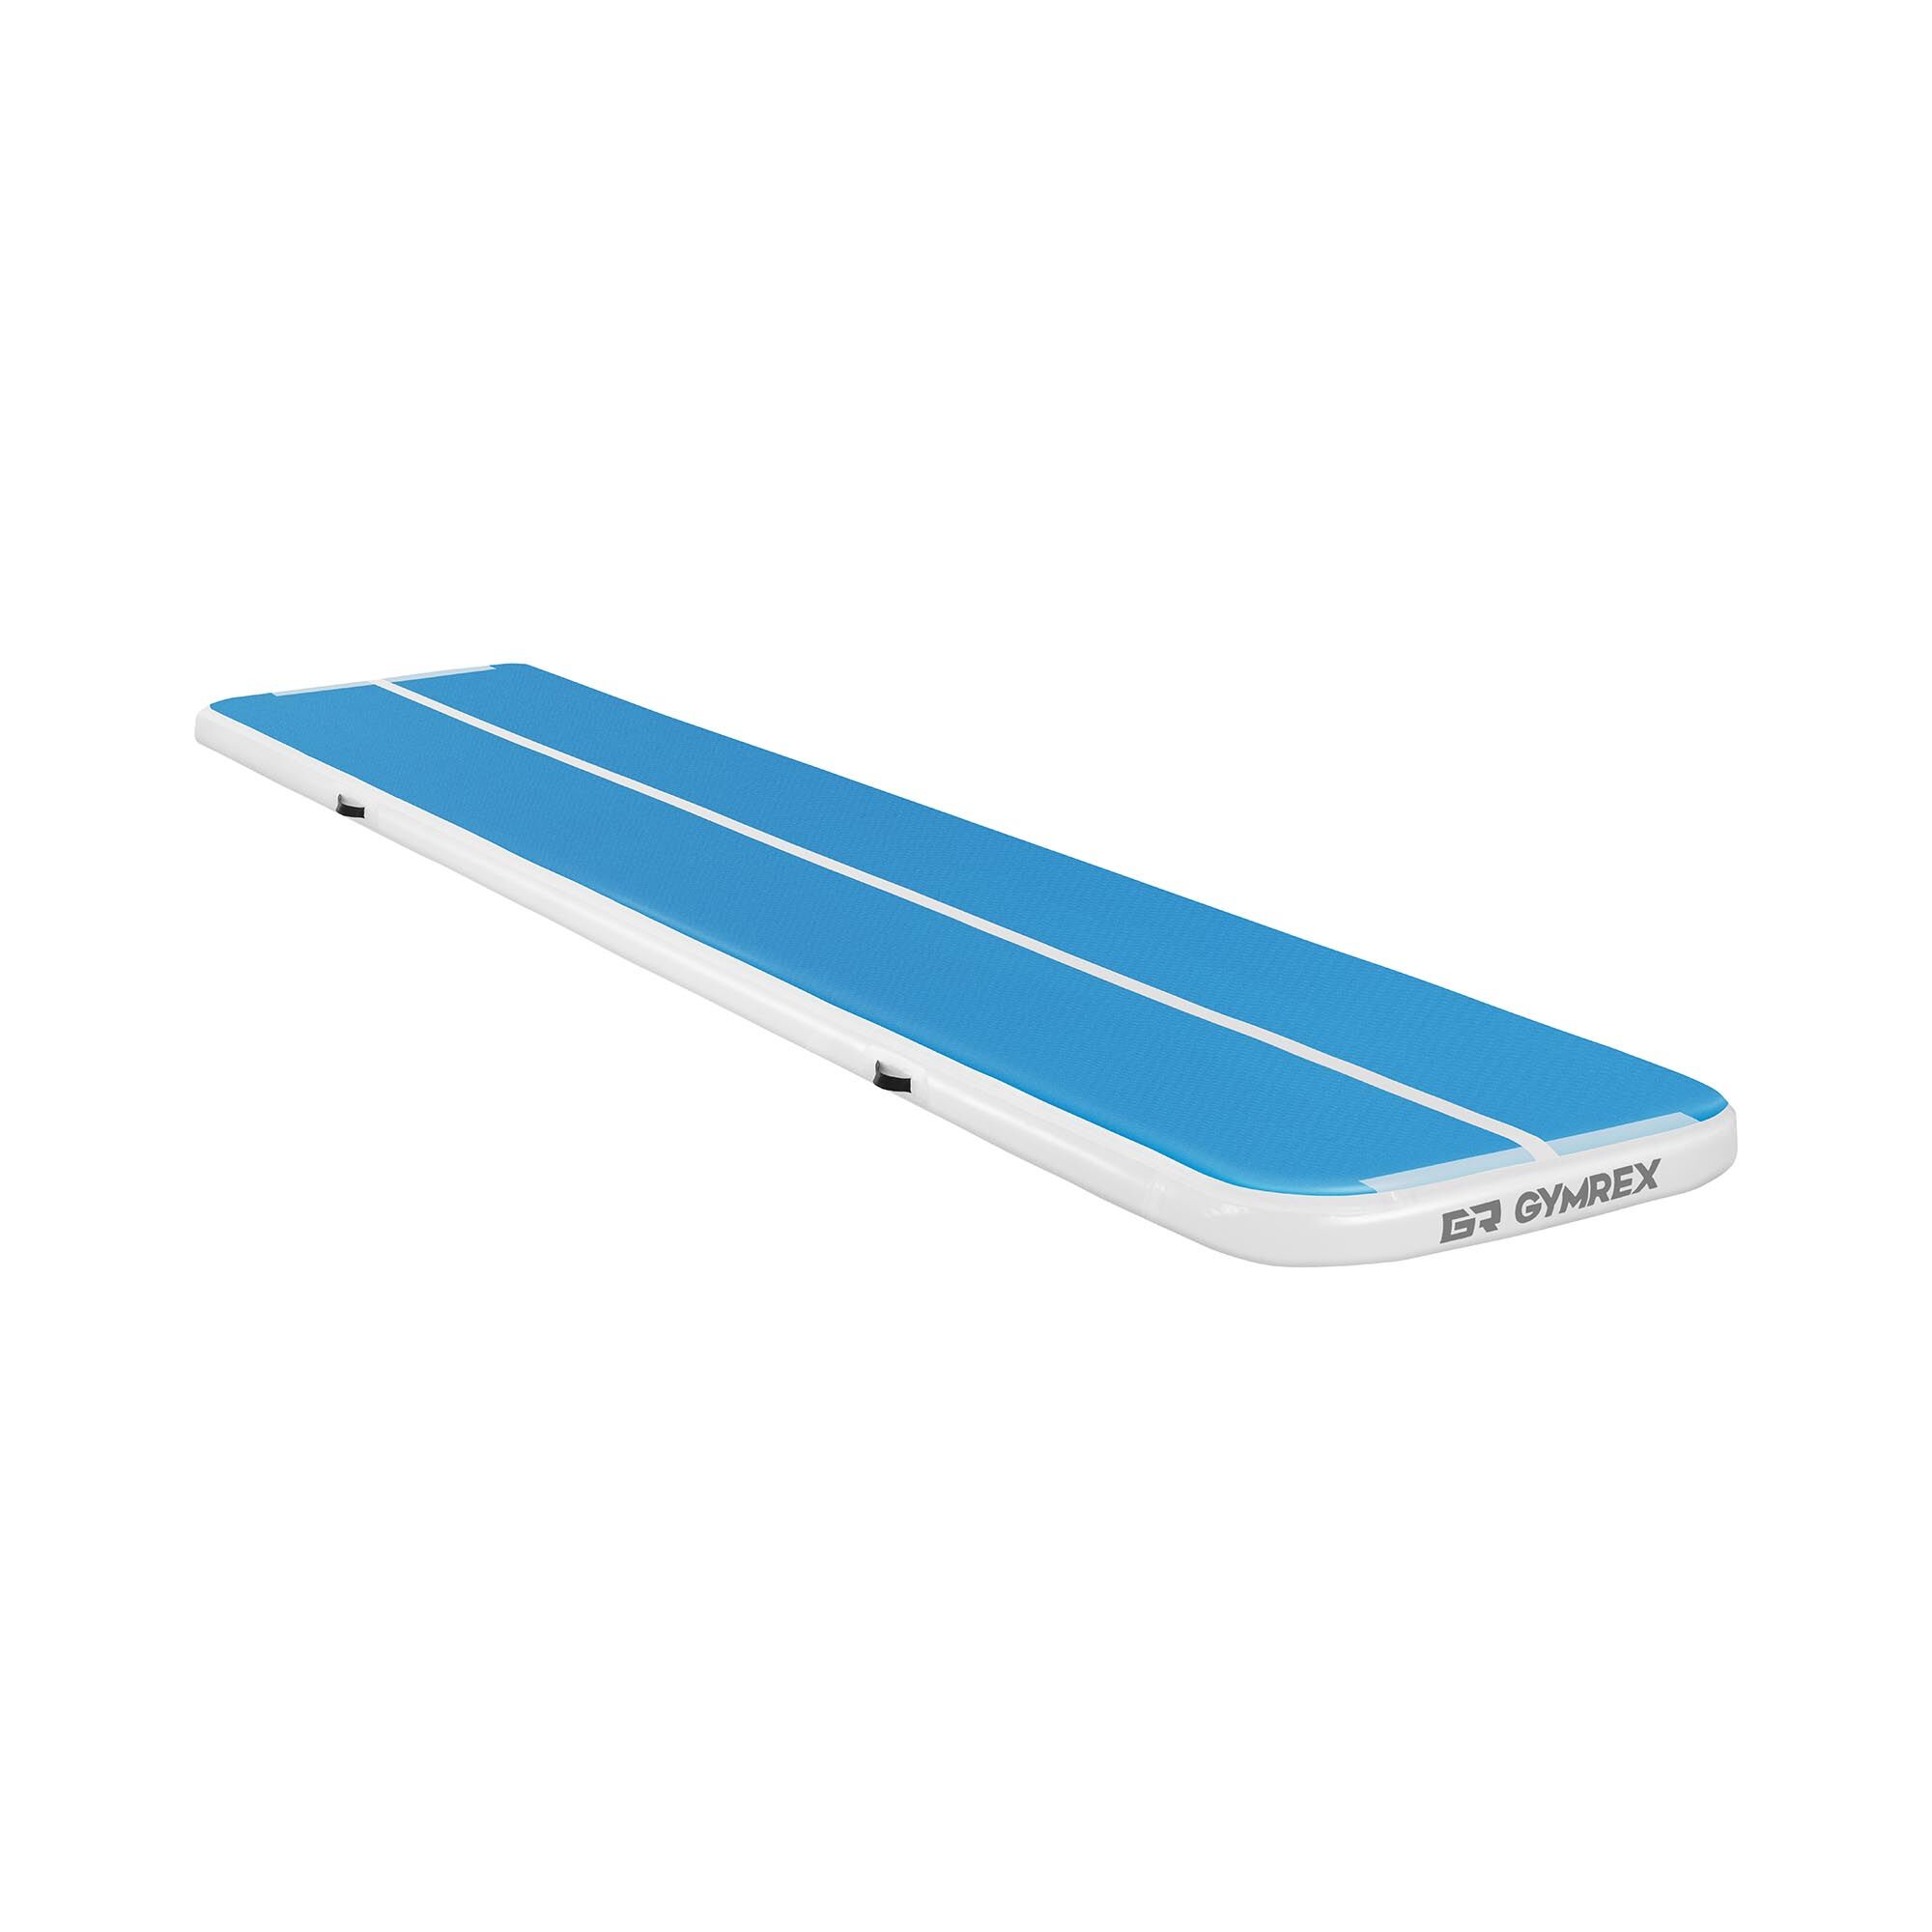 Gymrex Tapis de gym gonflable - 500 x 100 x 10 cm - 190 kg - Bleu/blanc GR-ATM19